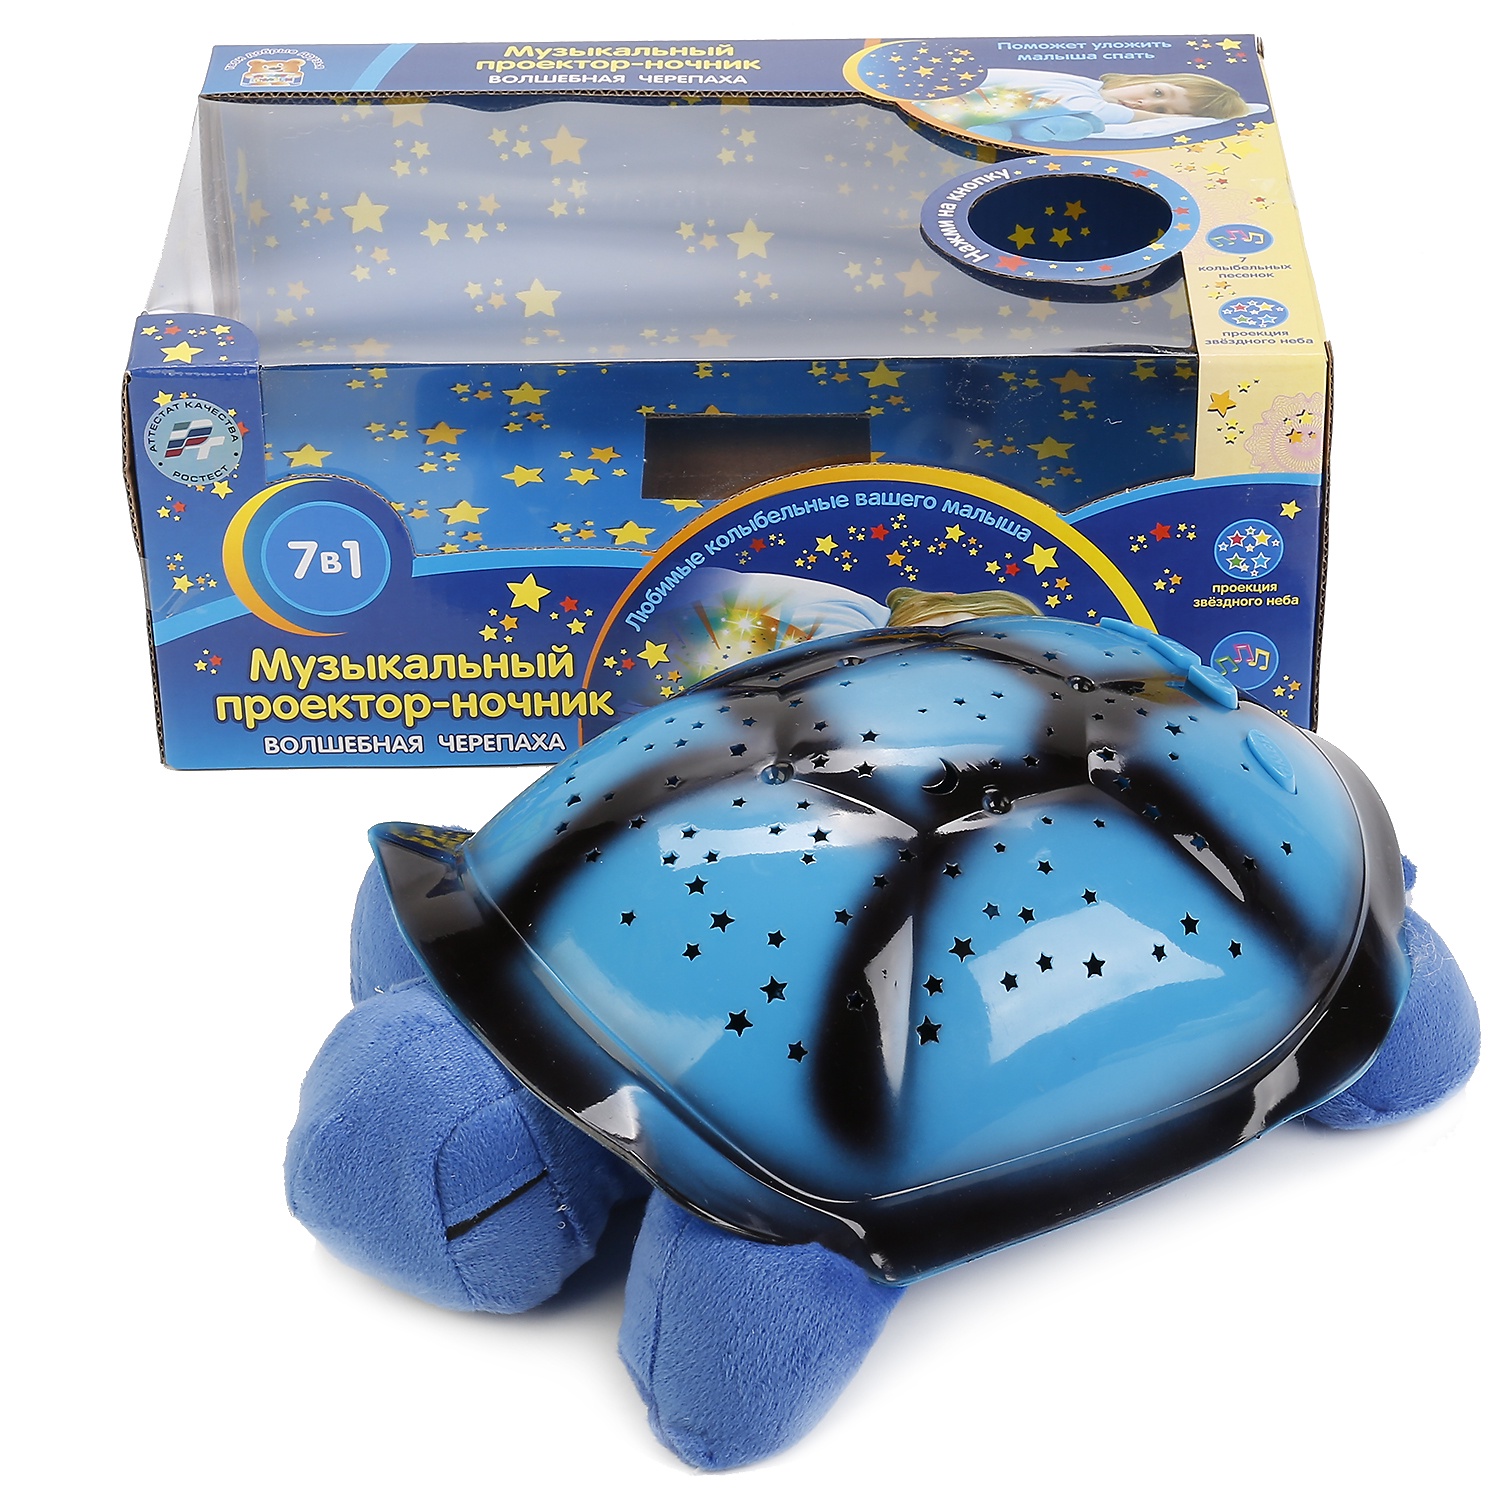 Мягкая игрушка Мульти-пульти ЧЕРЕПАХА, 241110 голубой